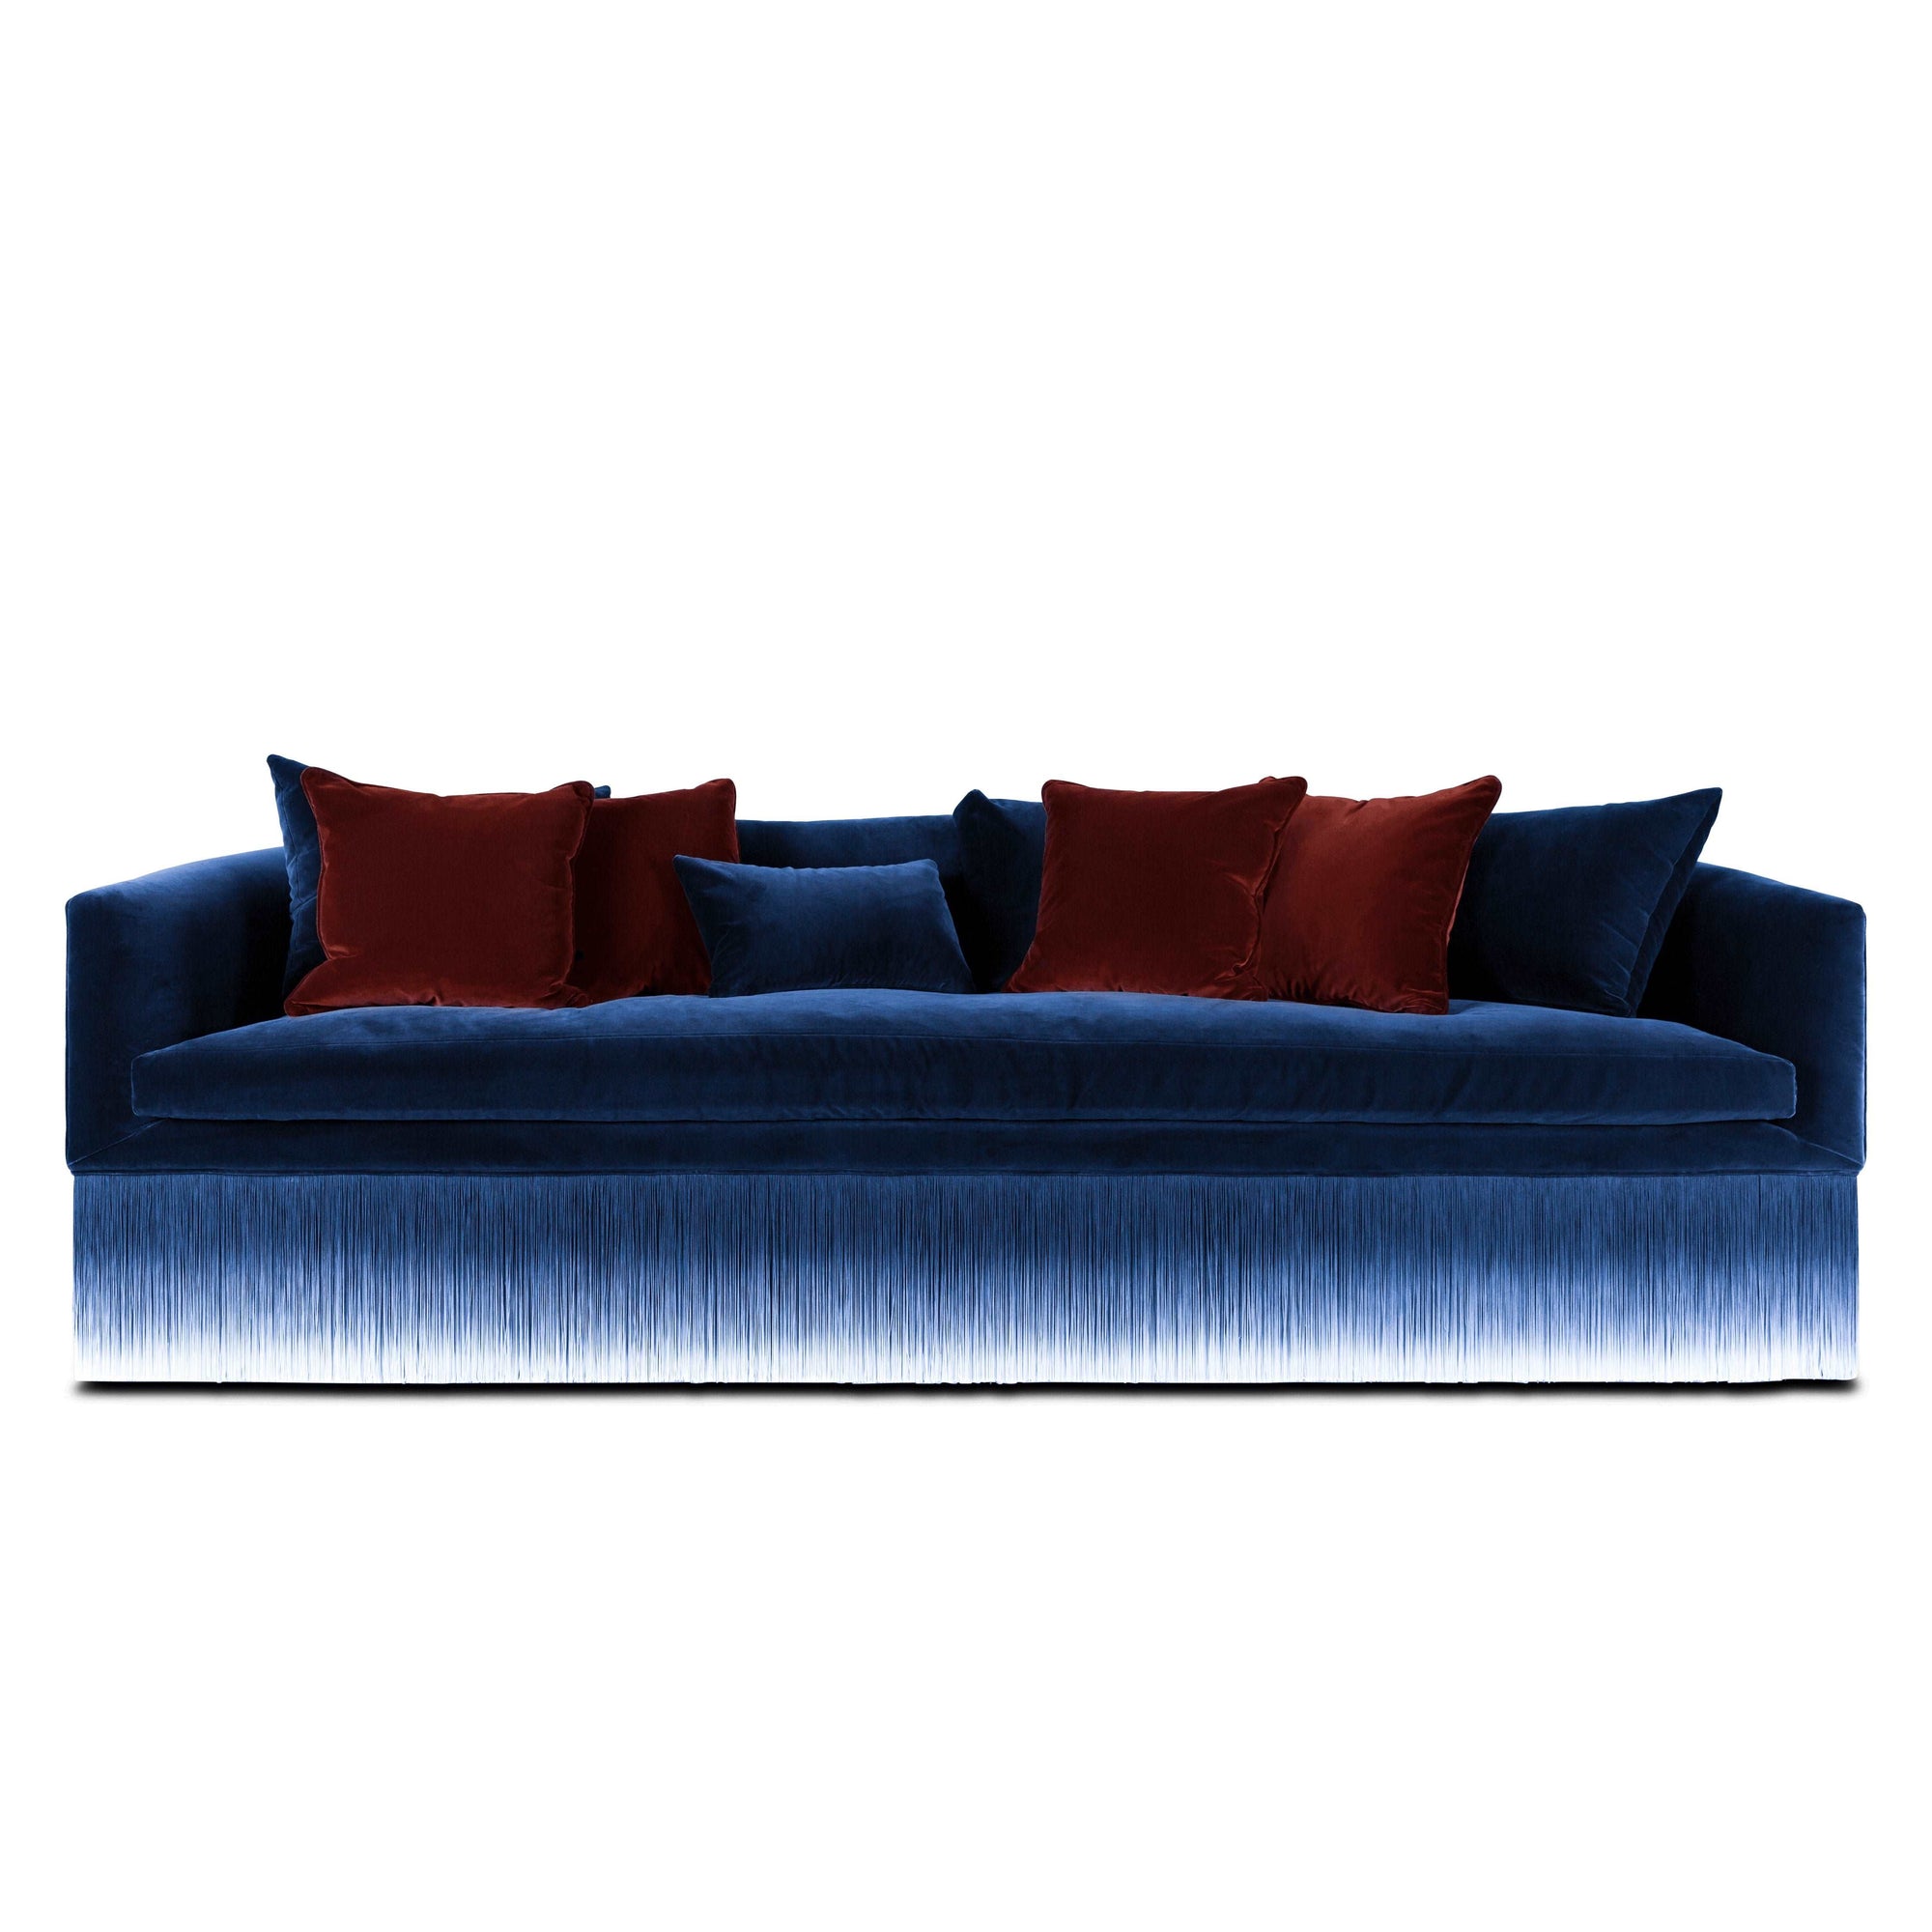 Amami Sofa - Curated - Furniture - Moooi